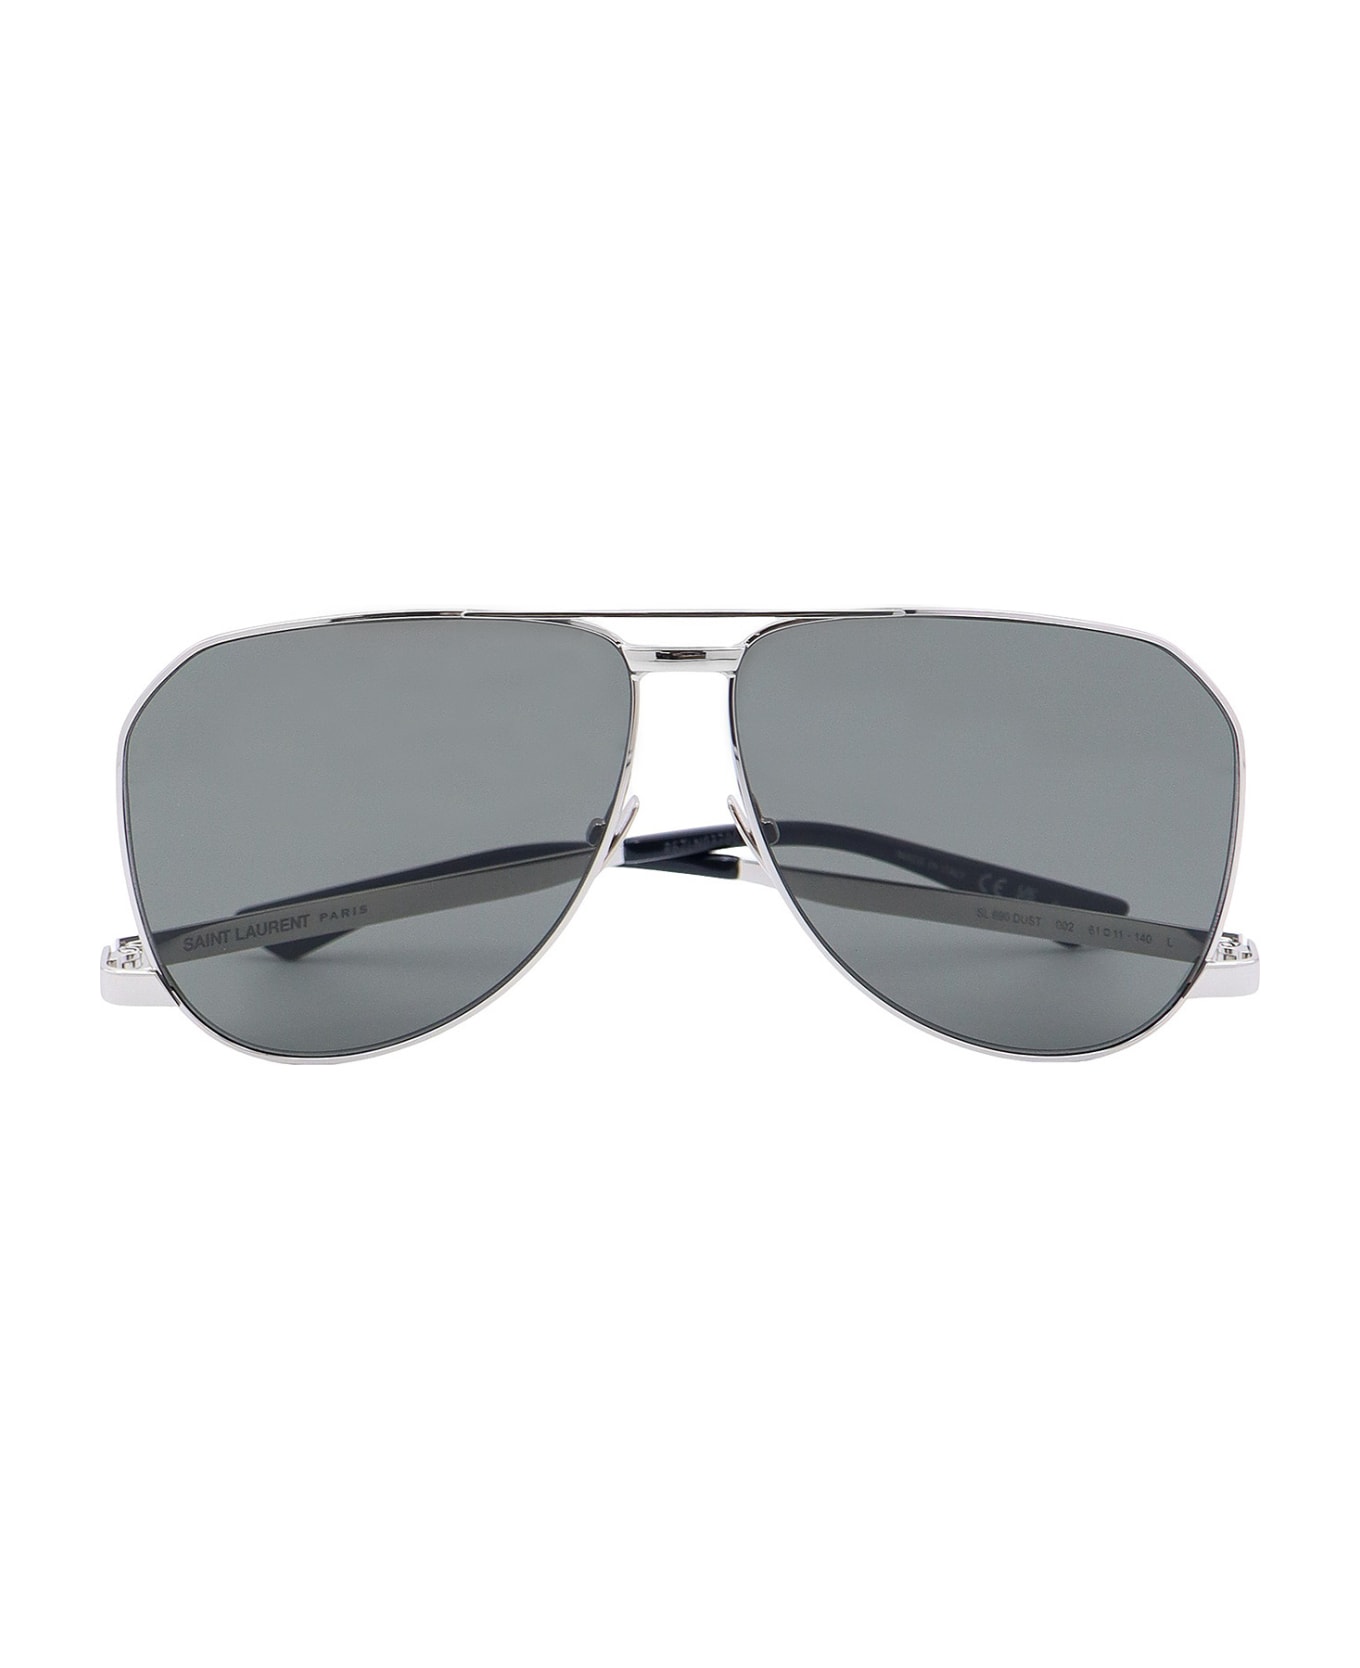 Saint Laurent Sl 690 Sunglasses - Silver